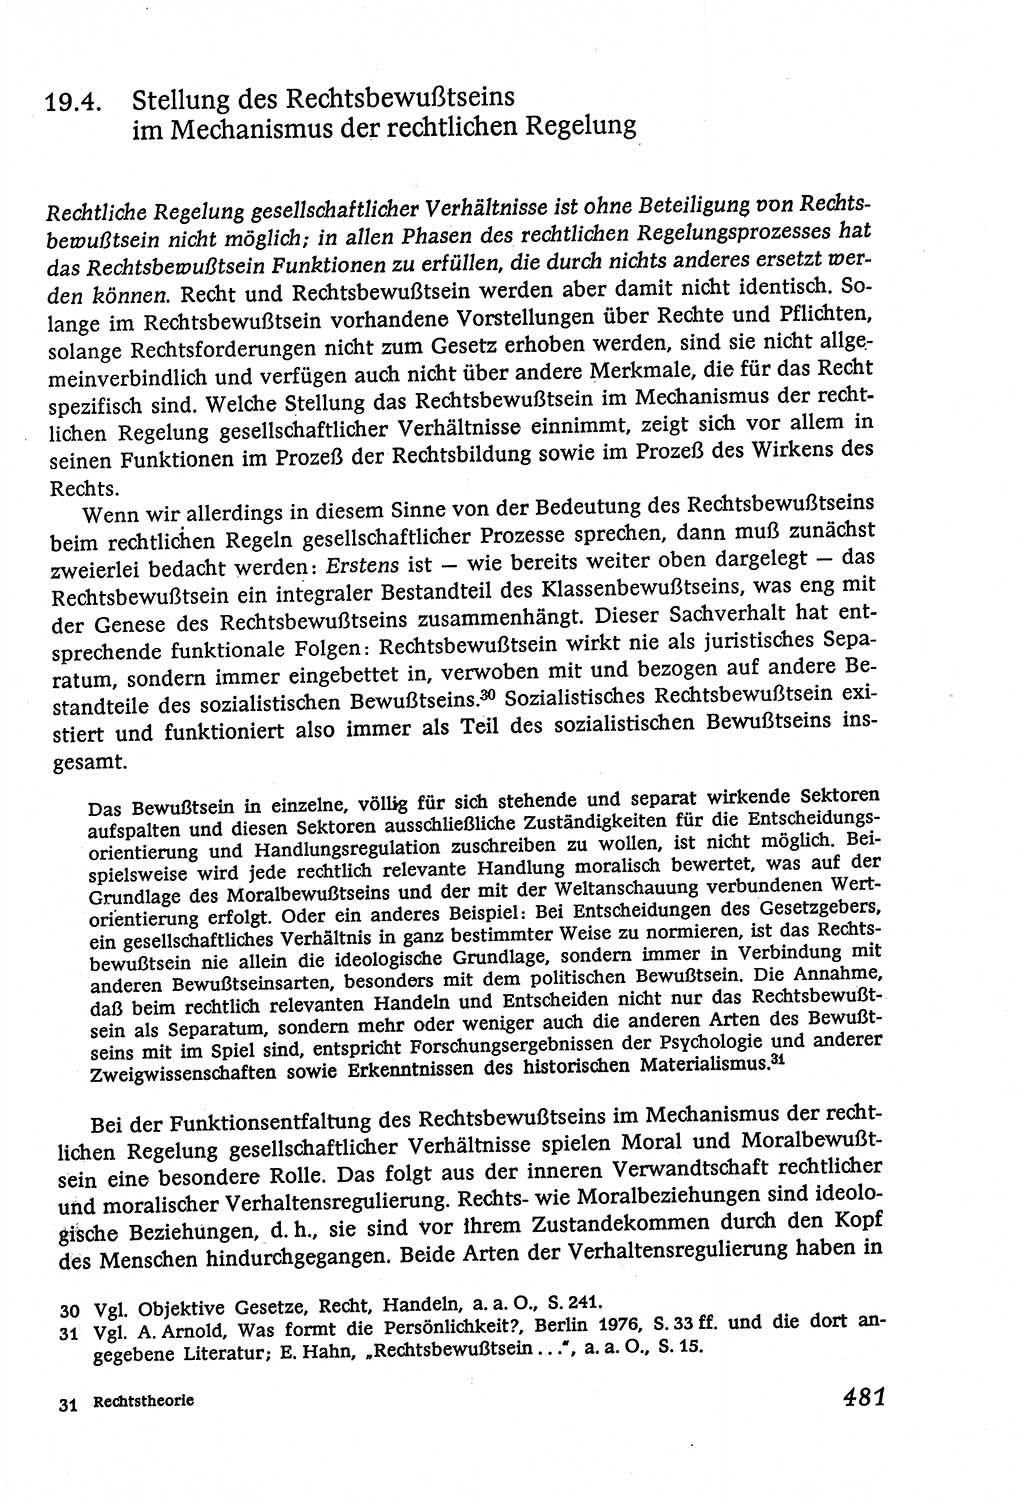 Marxistisch-leninistische (ML) Staats- und Rechtstheorie [Deutsche Demokratische Republik (DDR)], Lehrbuch 1980, Seite 481 (ML St.-R.-Th. DDR Lb. 1980, S. 481)